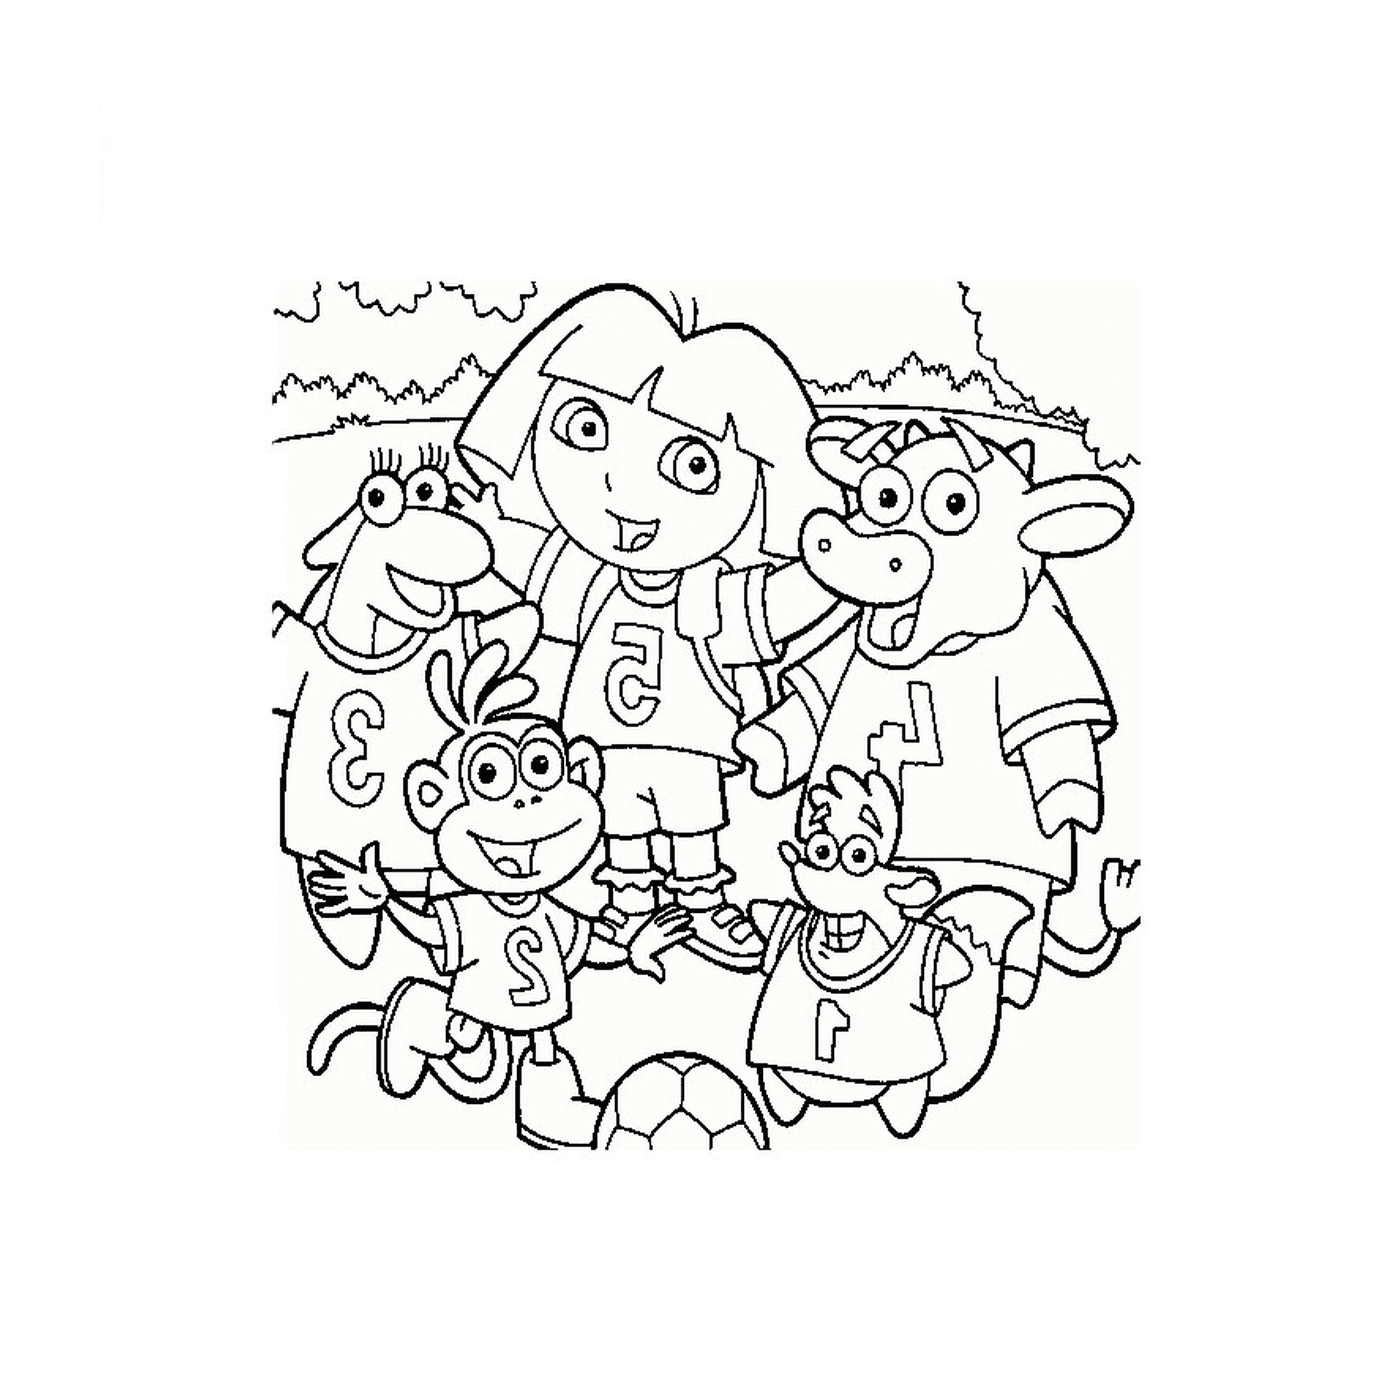  Dora und ihre Freunde haben eine gute Zeit 